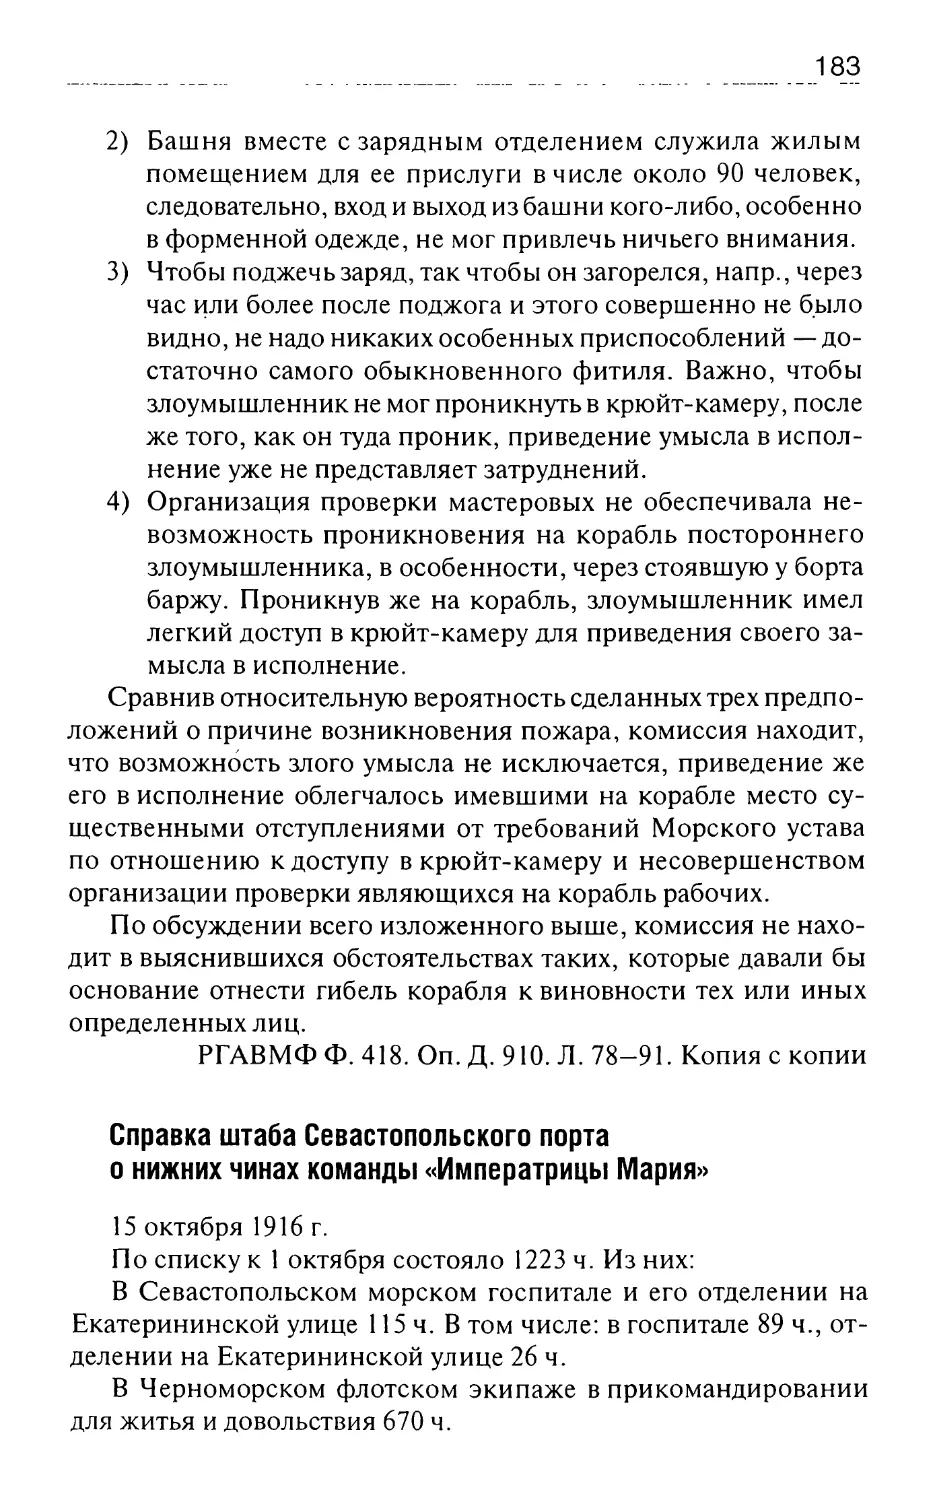 Справка штаба Севастопольского порта о нижних чинах команды «Императрицы Мария»